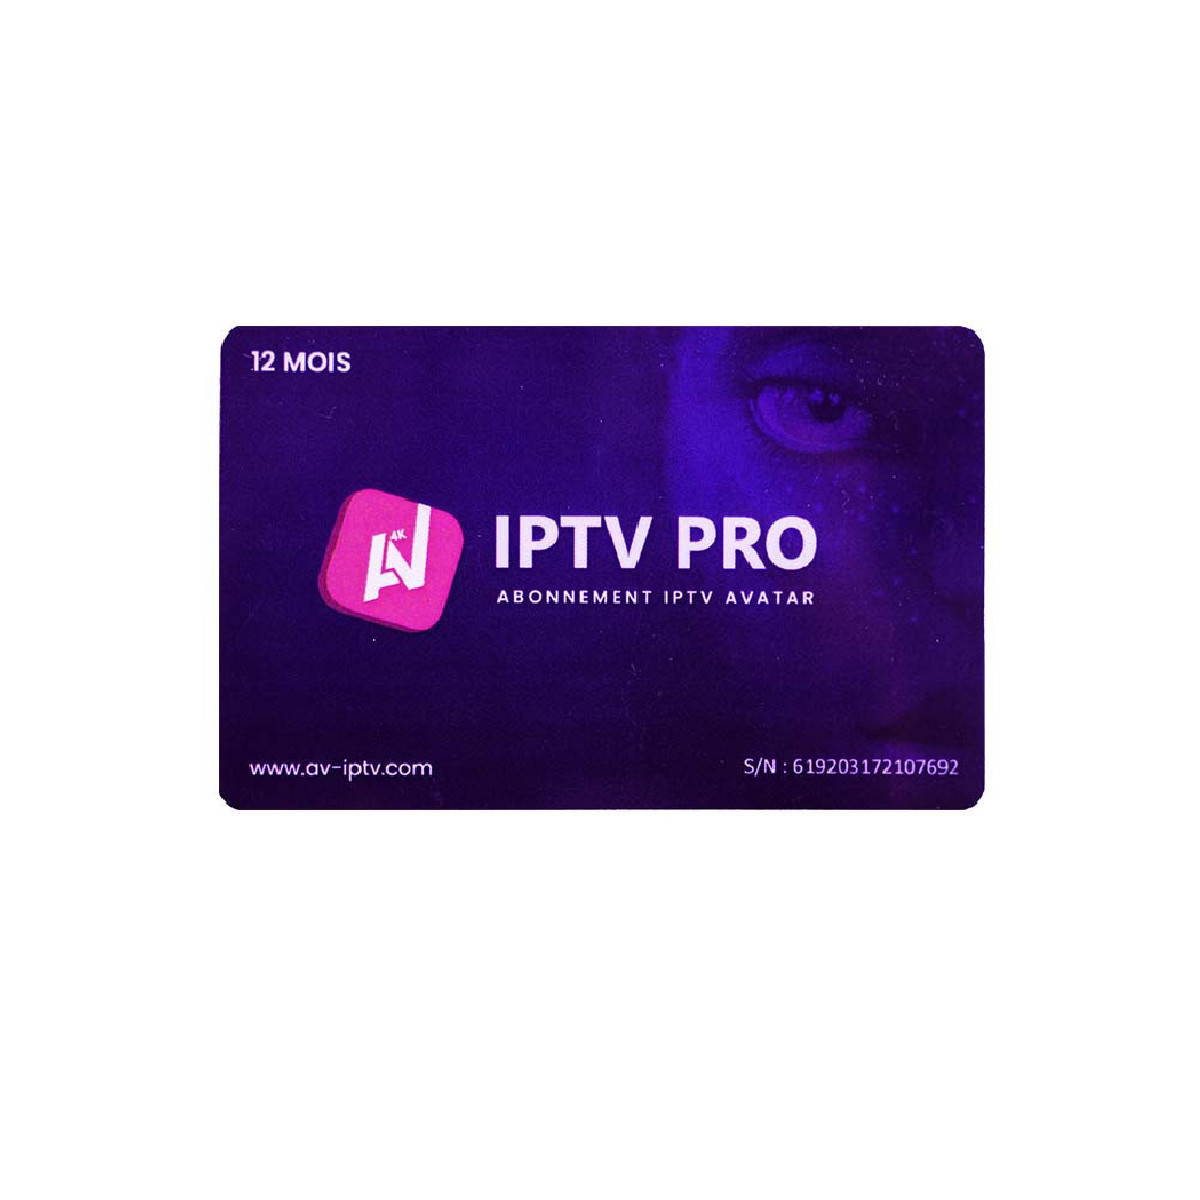 Avatar IPTV Pro Abonnement 12 Mois